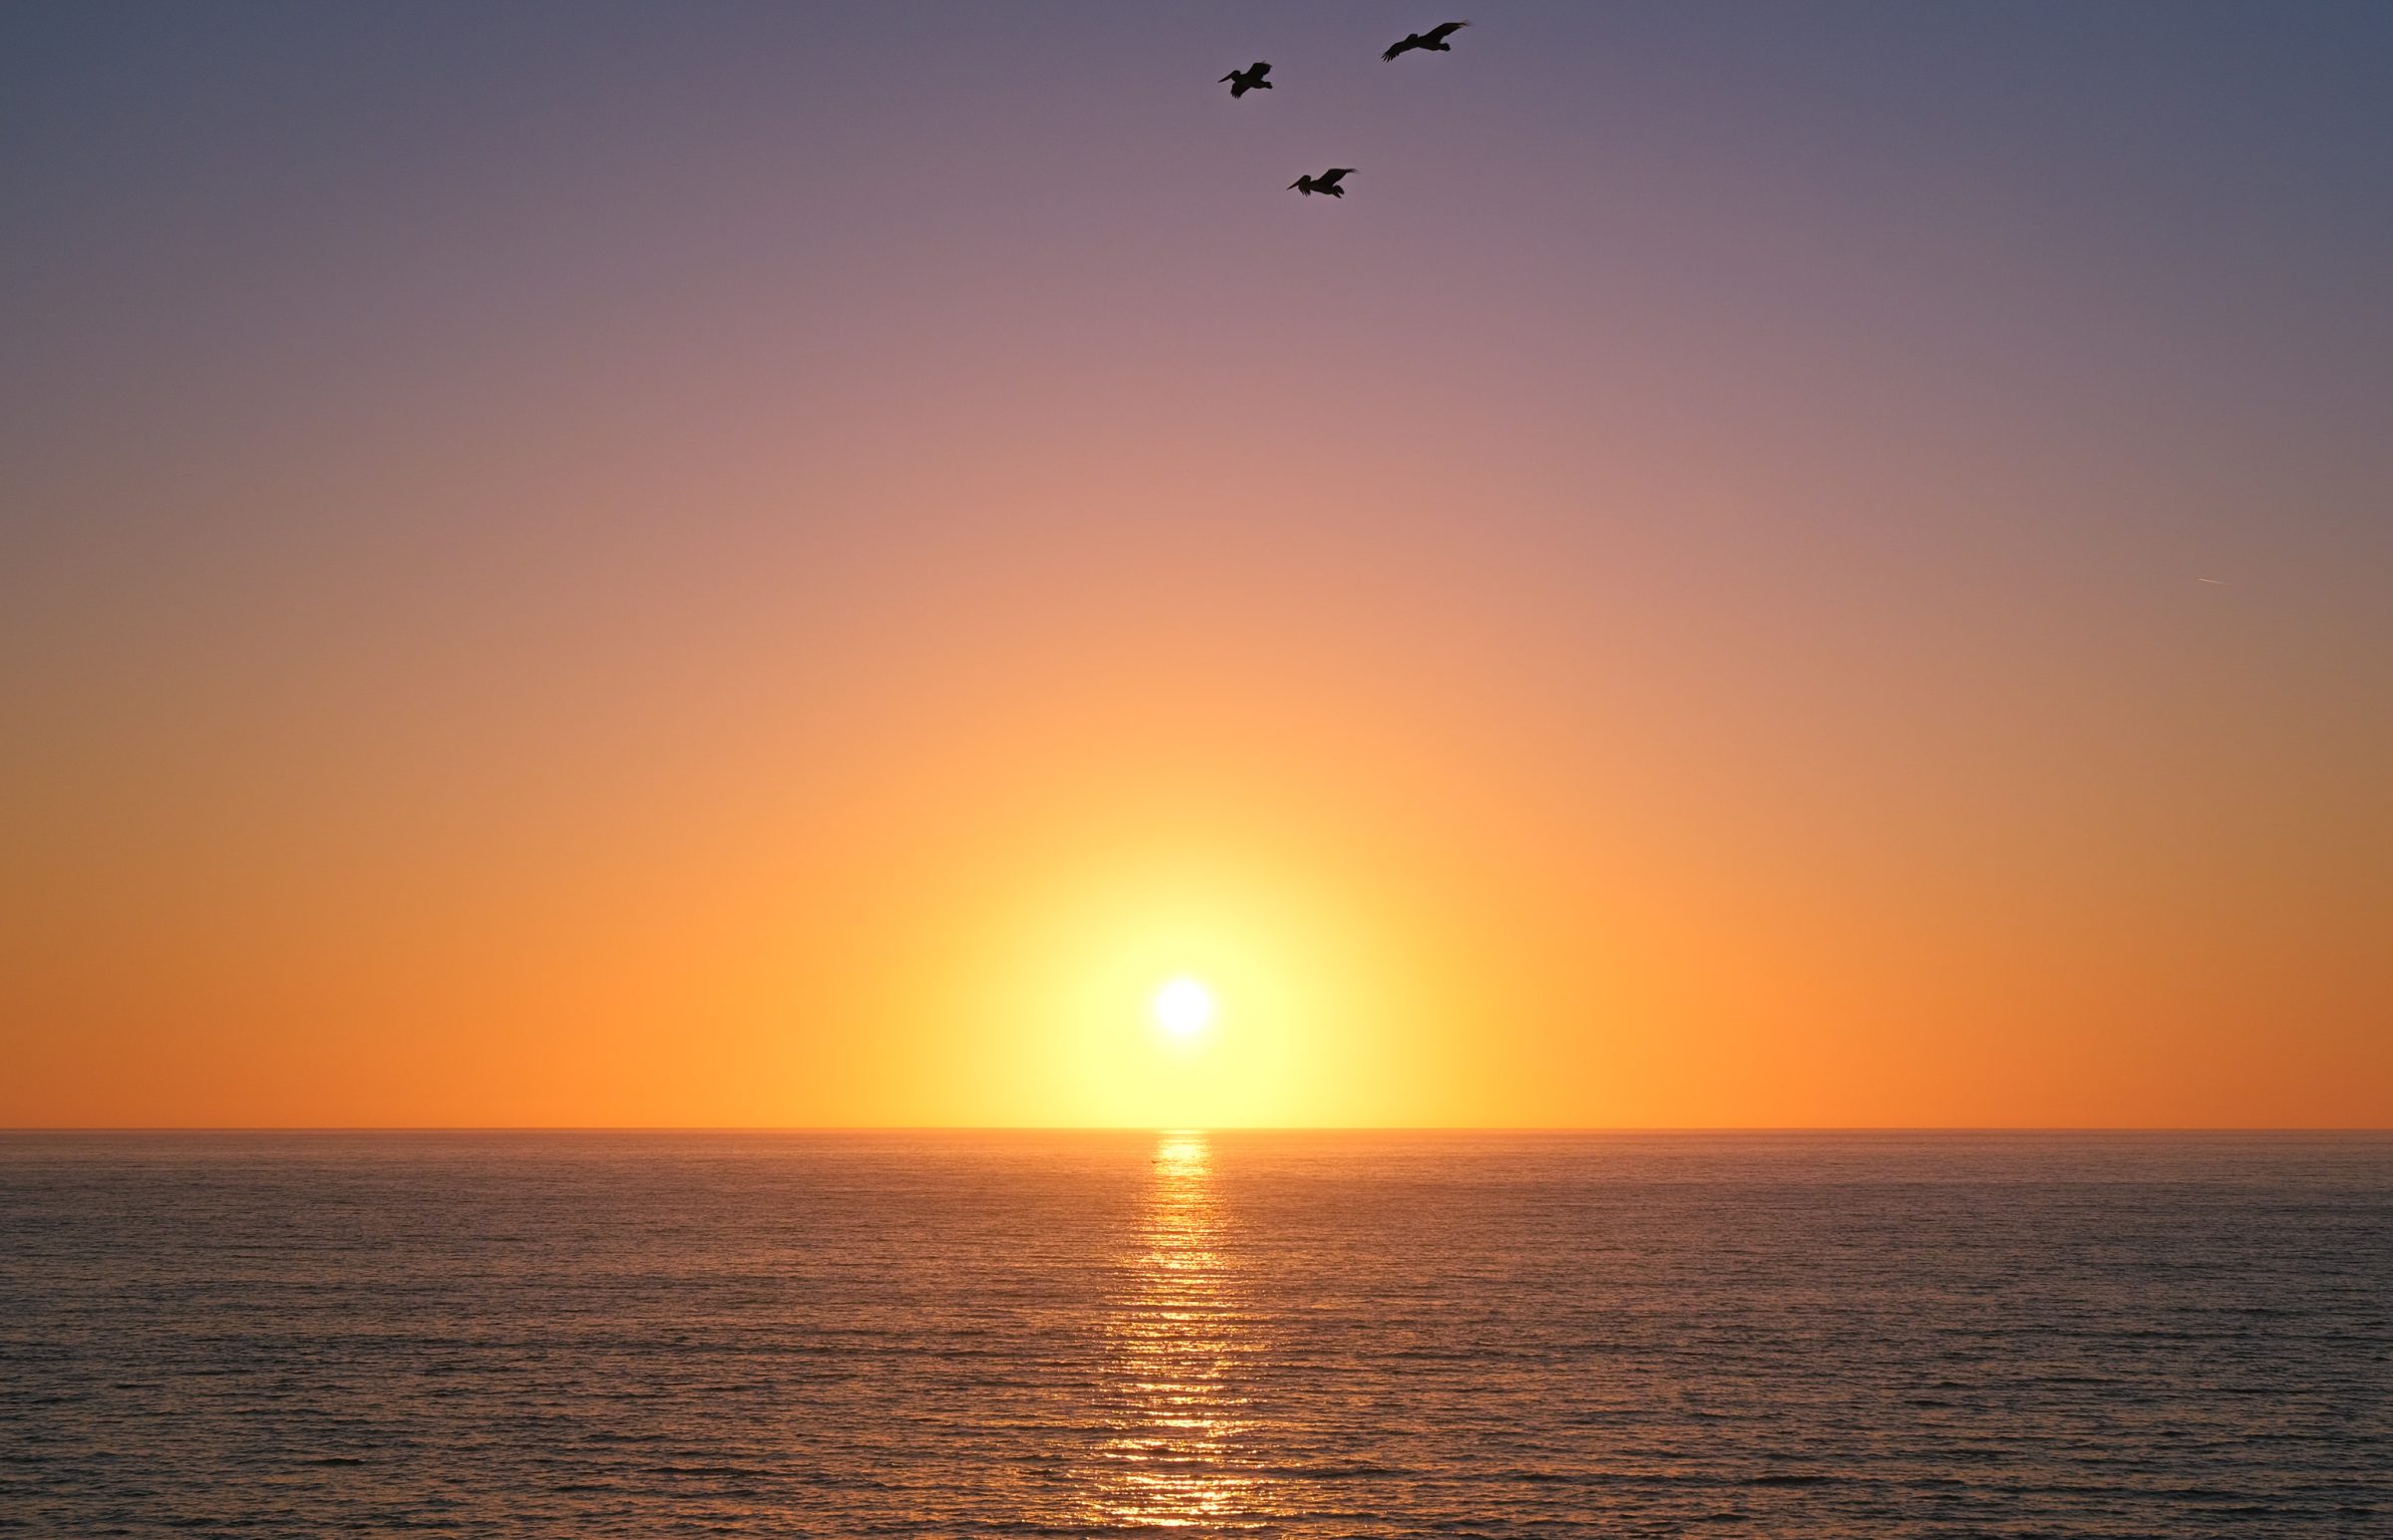 Ett lugnt hav, den nedgående solen och pelikaner som flyger över huvudet. Det ultimata lugnet.